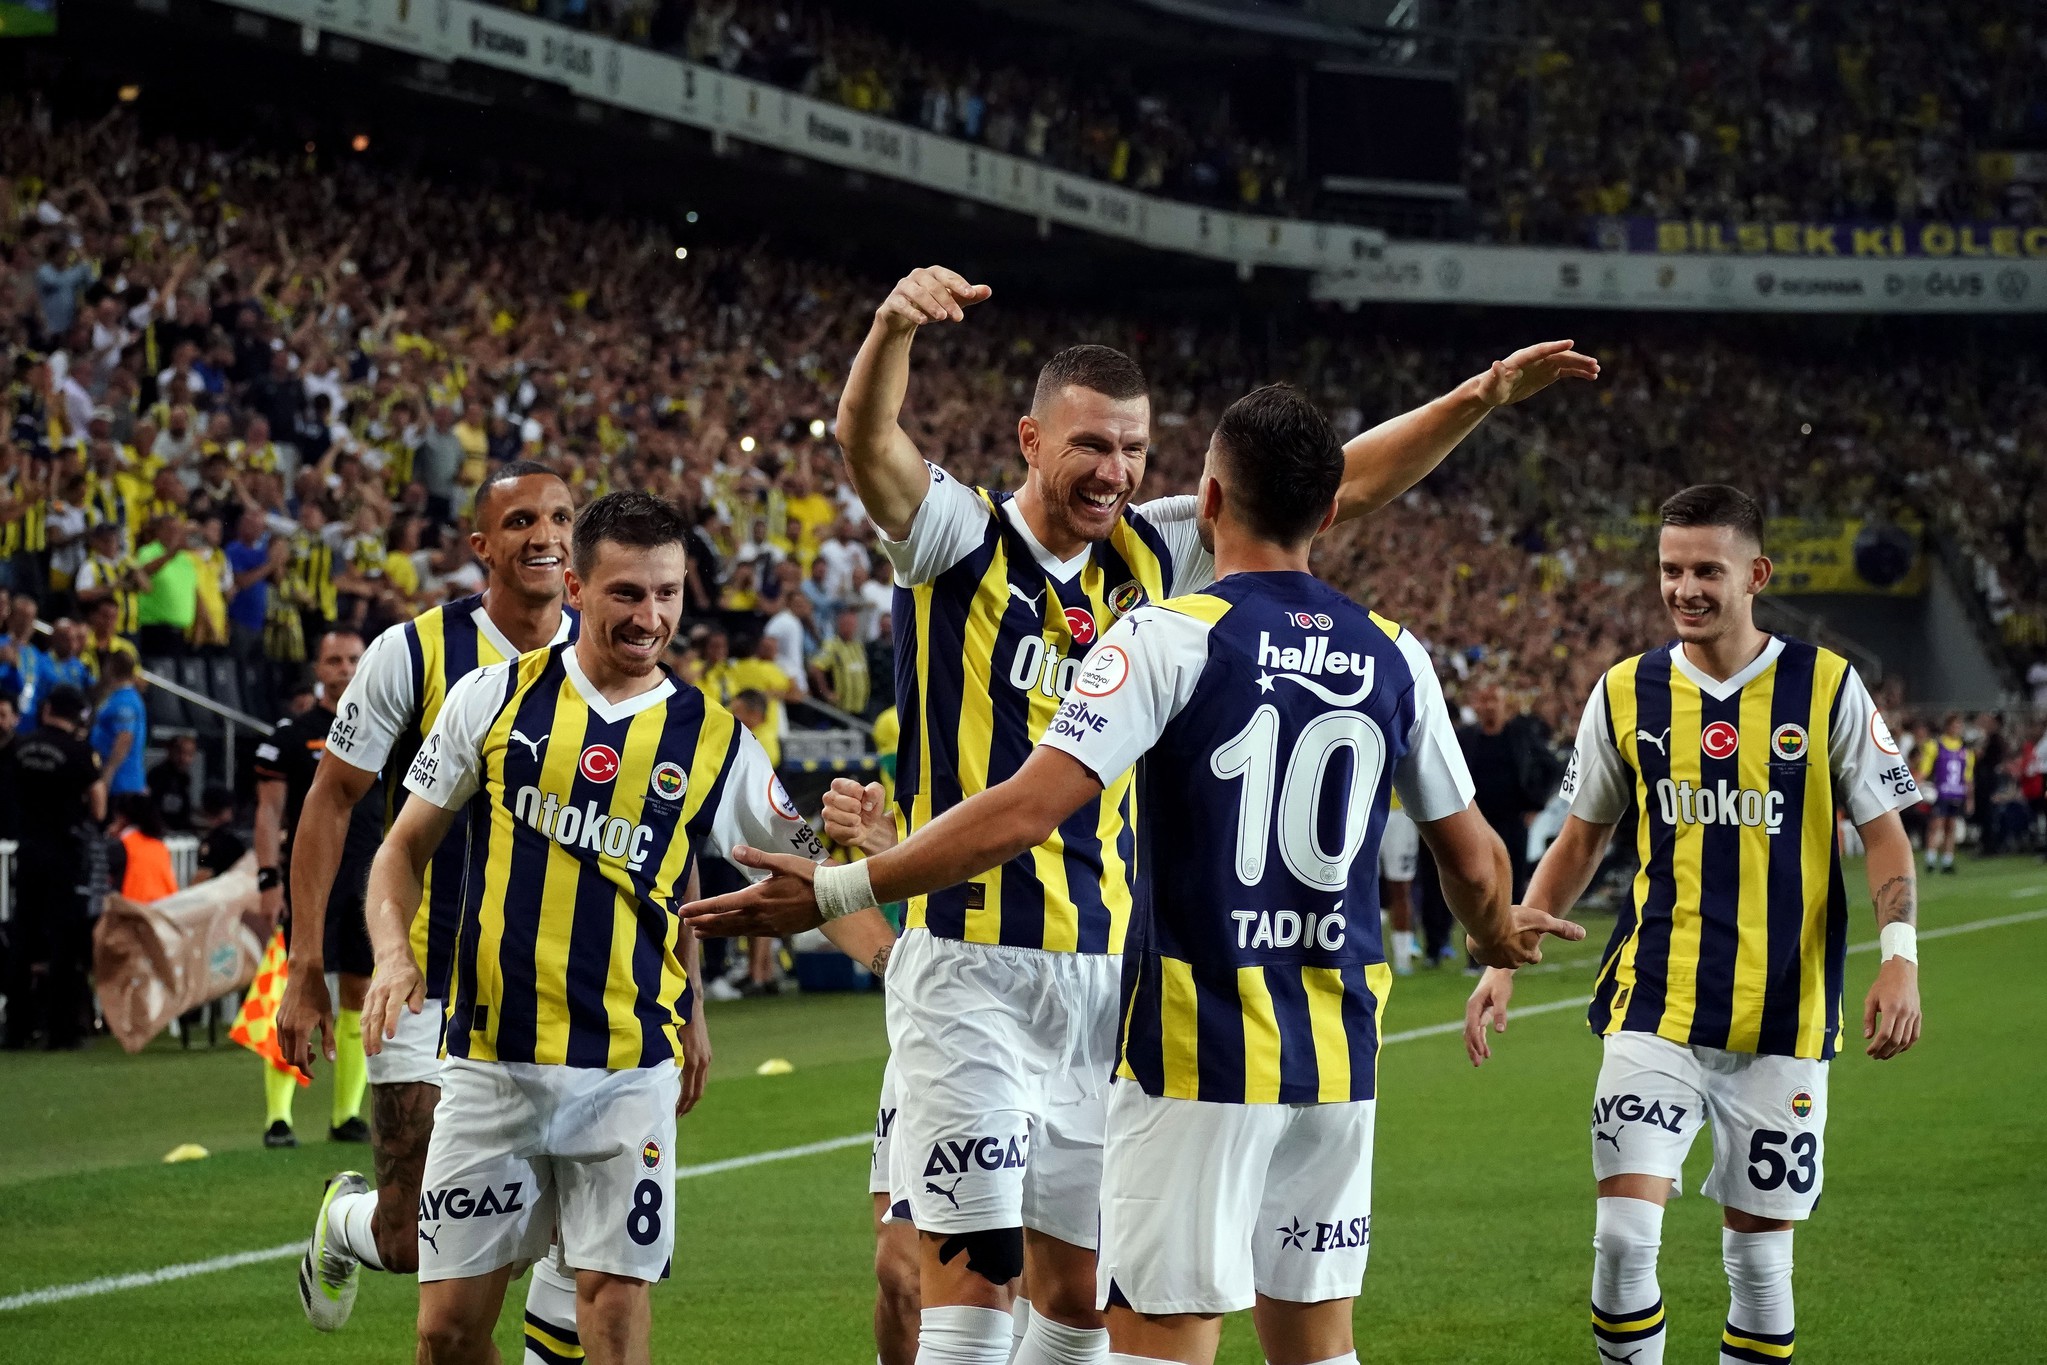 TRANSFER HABERİ: Fenerbahçe ve Galatasaray’ın gözü onlarda! Dünya yıldızları bedavaya gelebilir